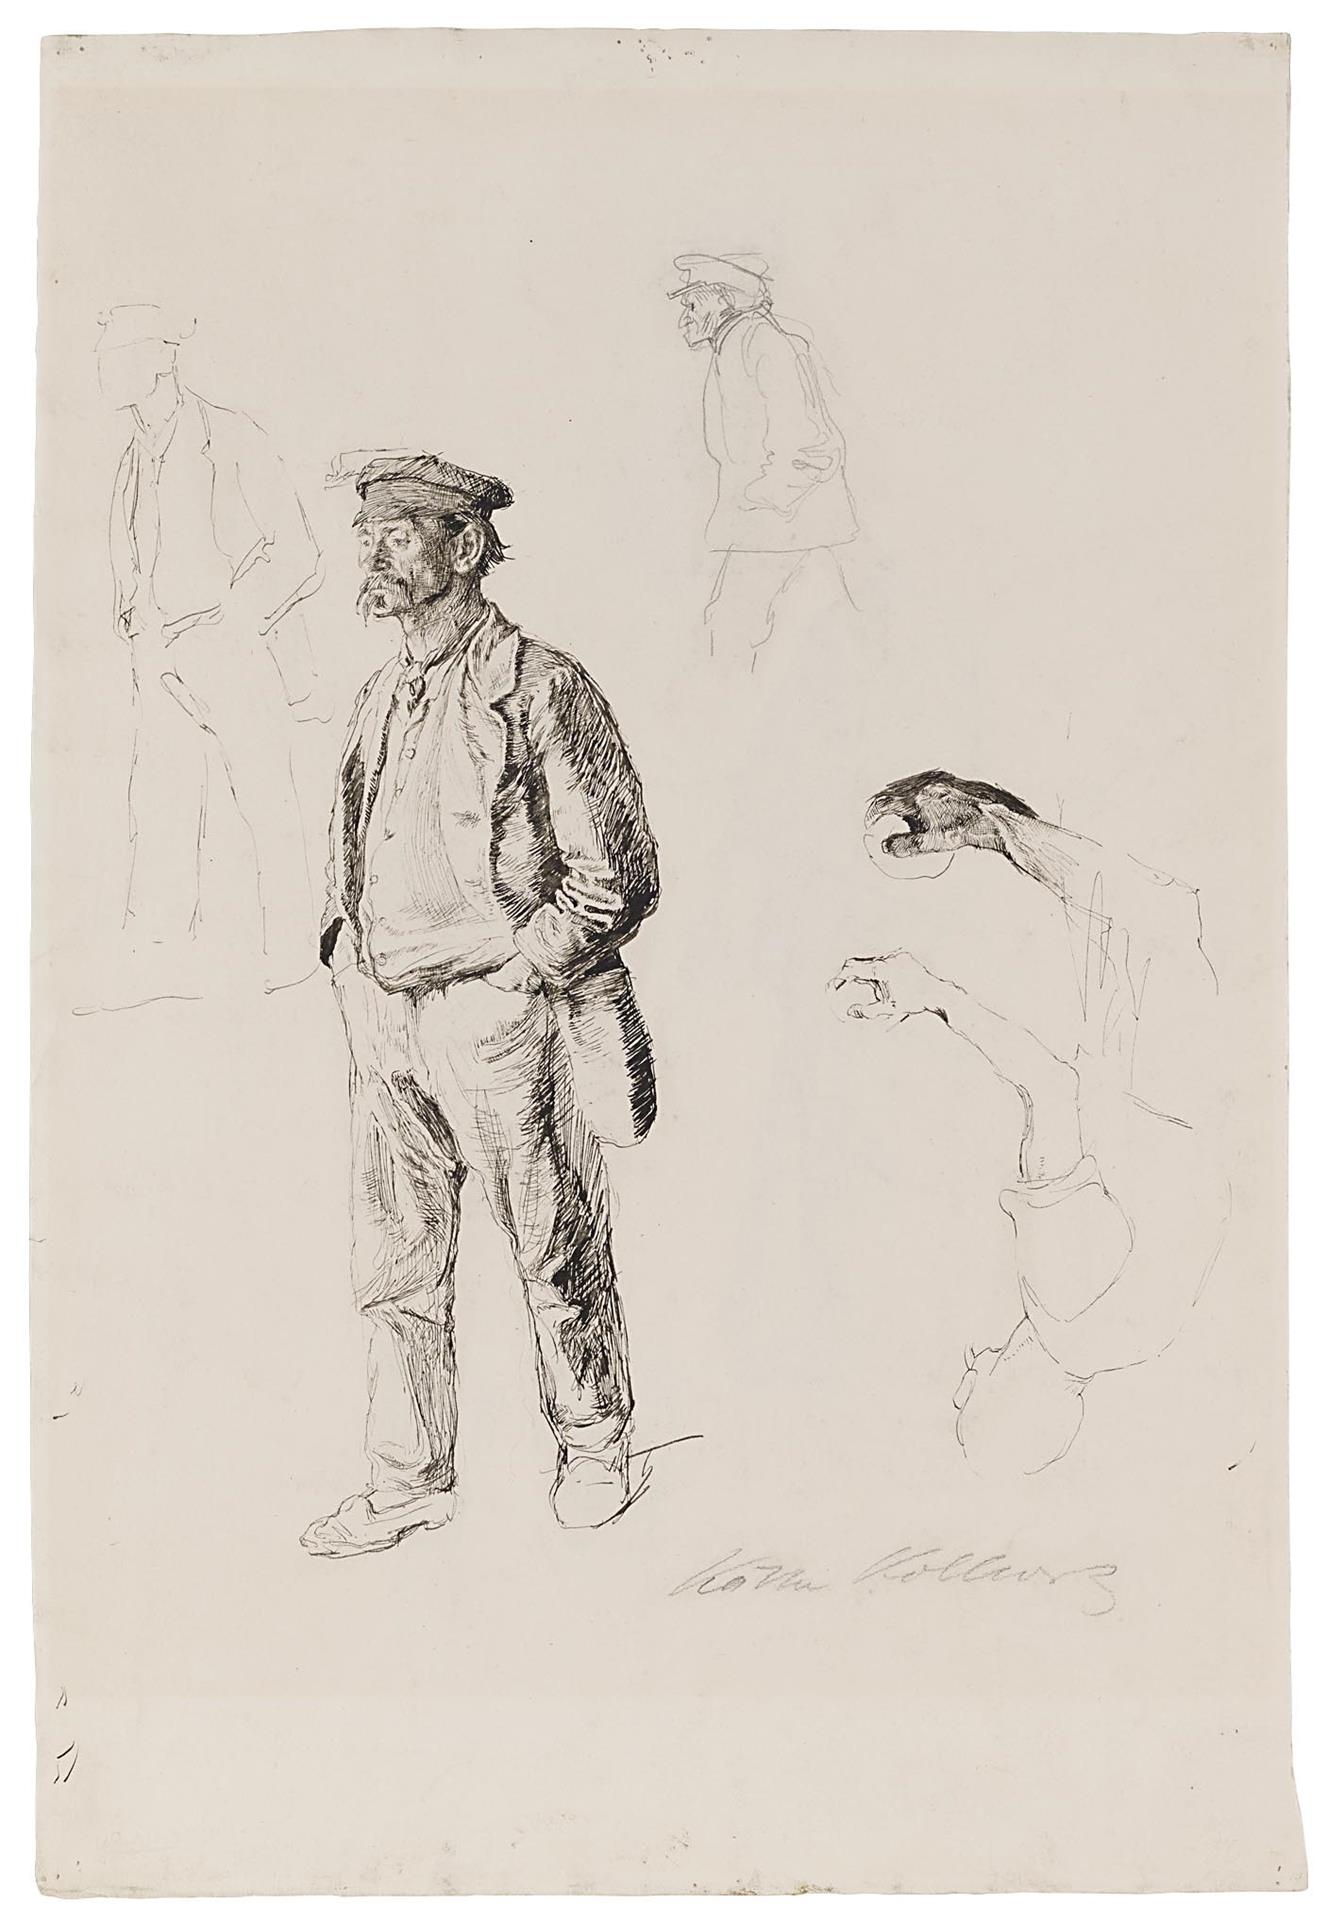 Käthe Kollwitz, Étude d’homme debout en pied, 1896, plume et encre noire et mine de plomb sur vélin fort, NT 128